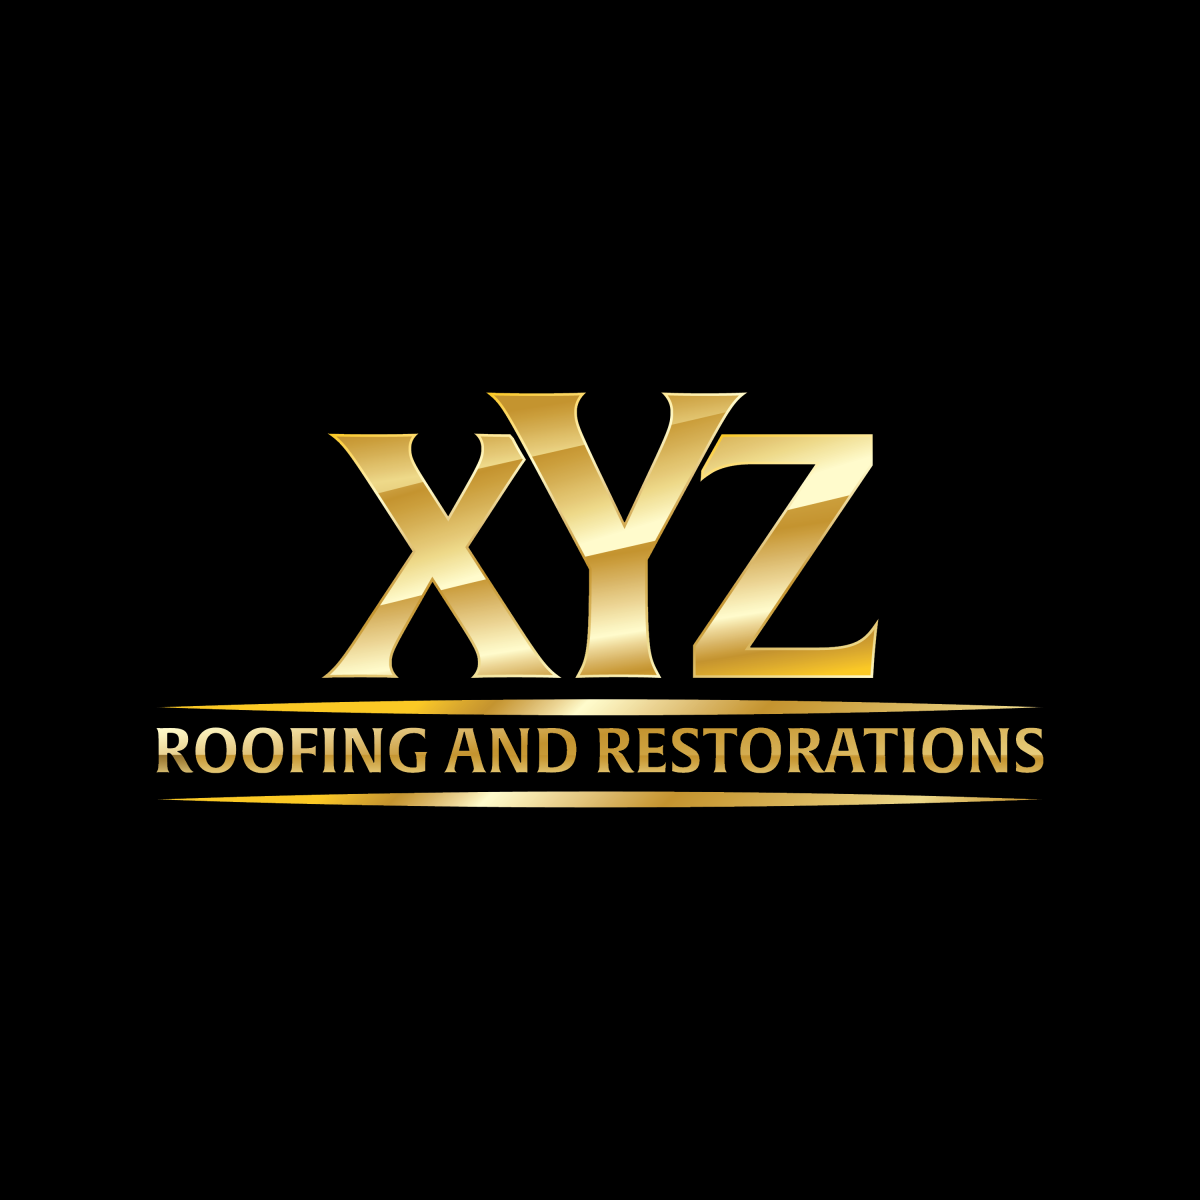 XYZ Roofing and Restorations - McAllen, TX